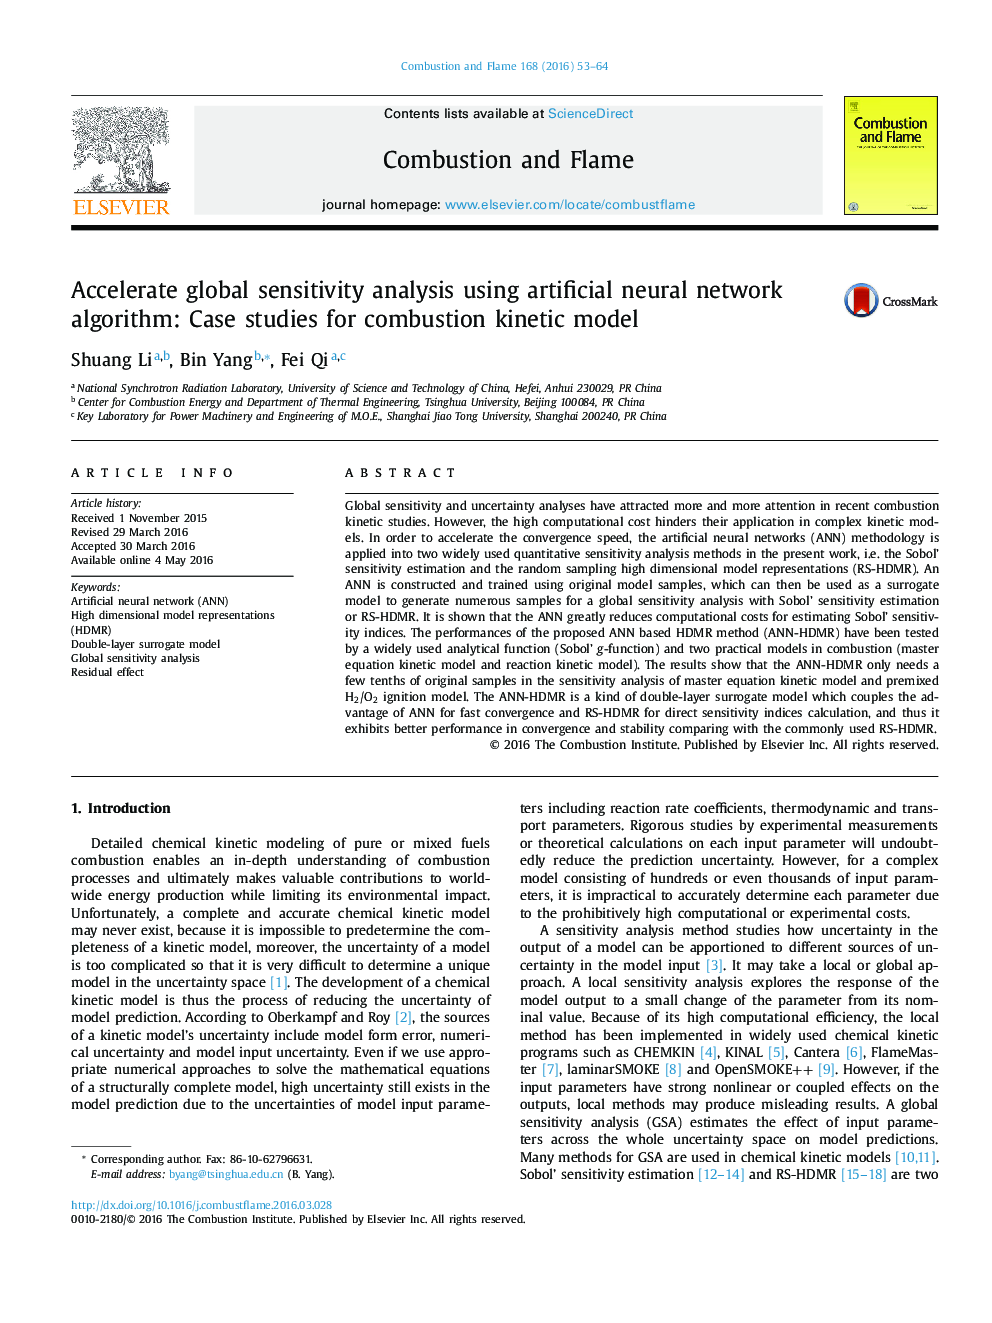 تسریع در تحلیل حساسیت جهانی با استفاده از الگوریتم شبکه عصبی مصنوعی: مطالعات موردی برای مدل جنبشی احتراق 